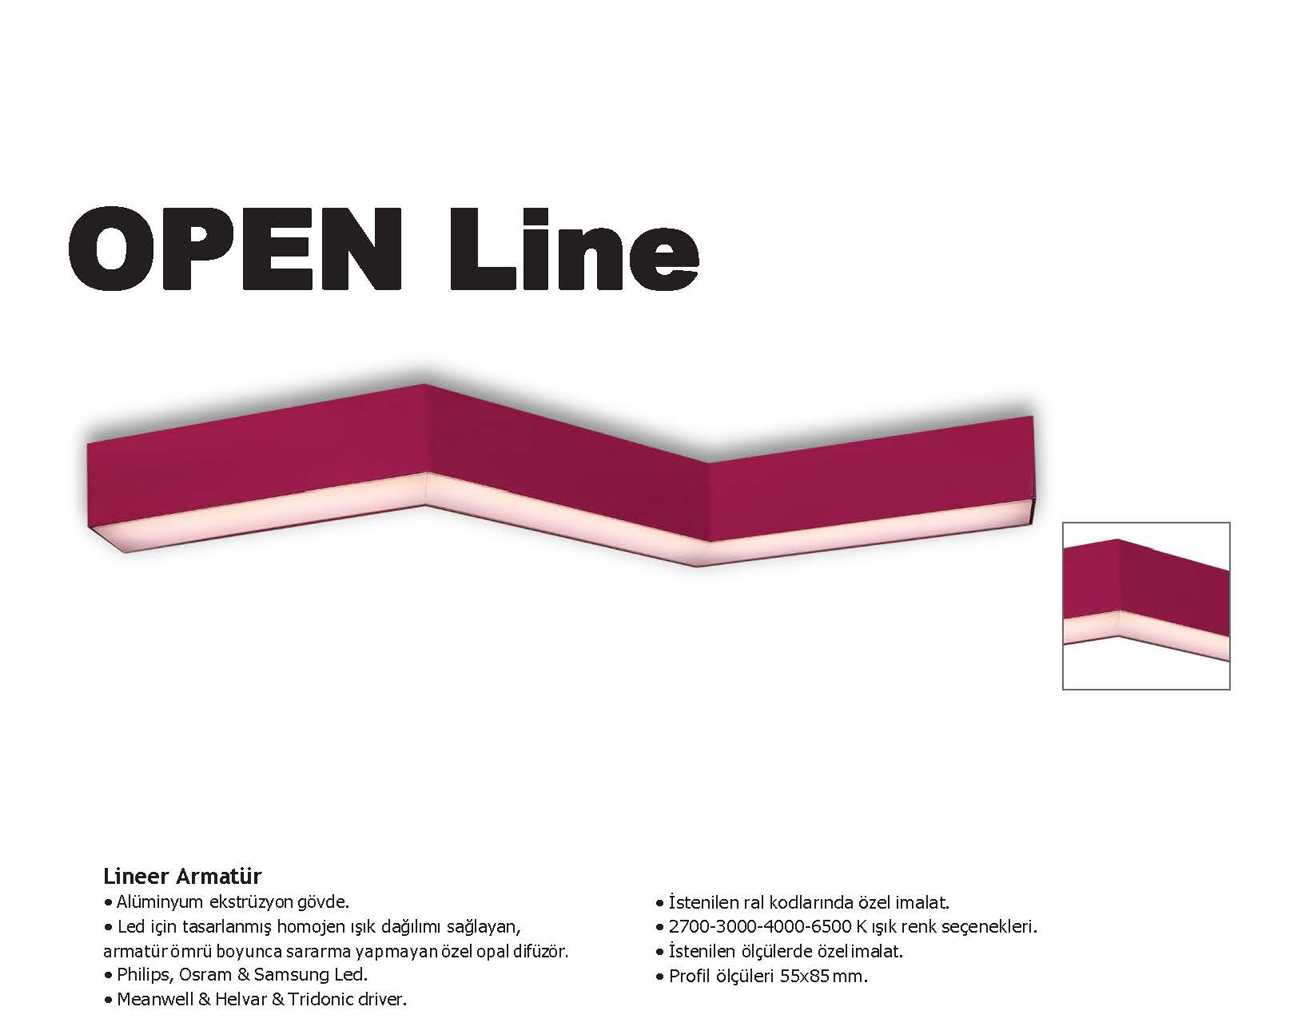 OPEN Line